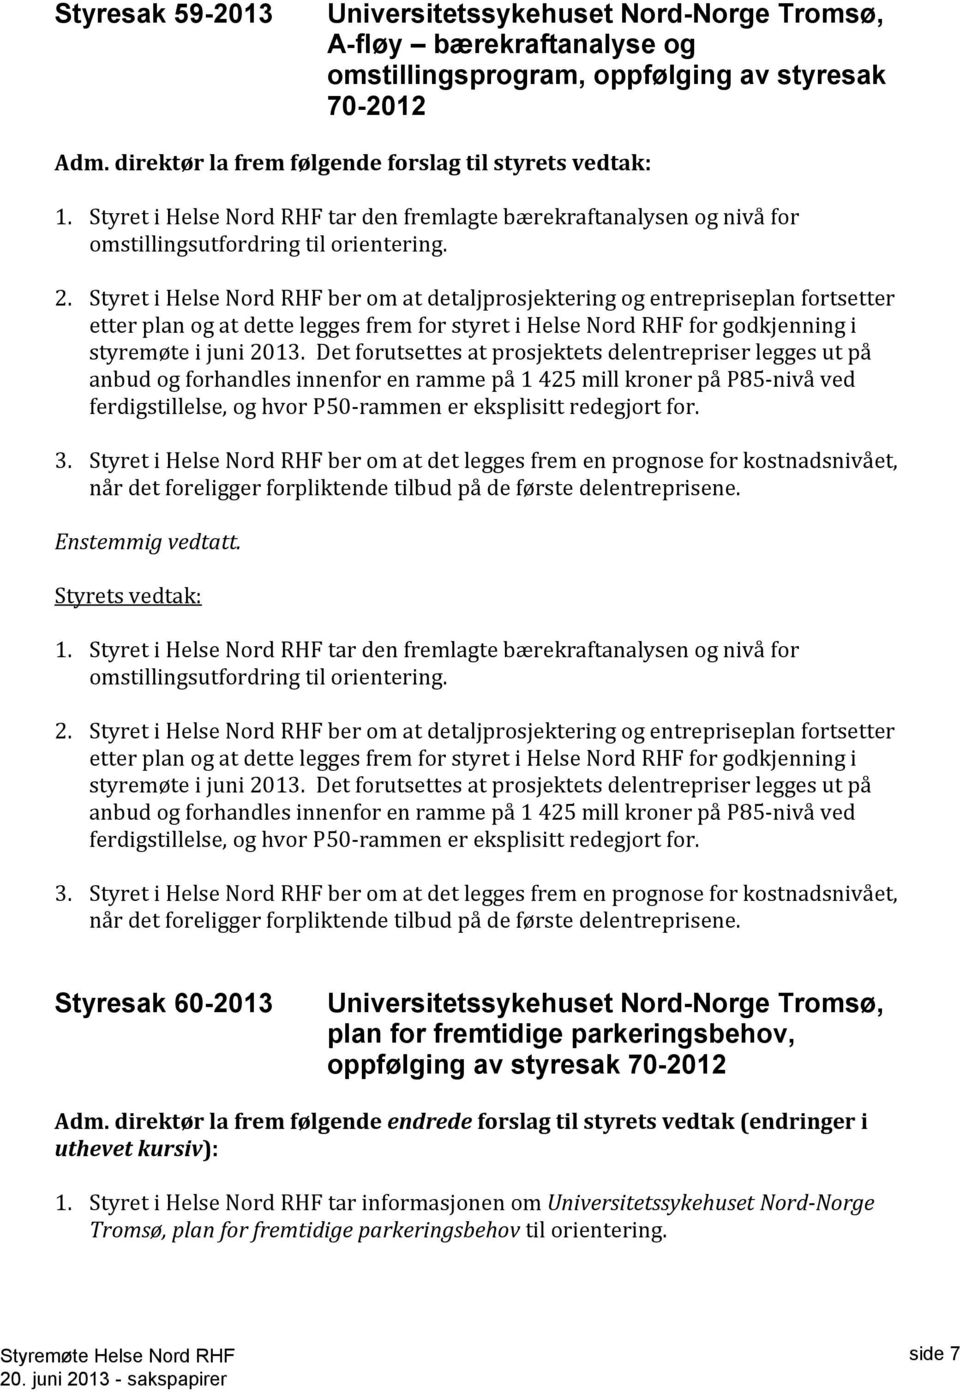 Styret i Helse Nord RHF ber om at detaljprosjektering og entrepriseplan fortsetter etter plan og at dette legges frem for styret i Helse Nord RHF for godkjenning i styremøte i juni 2013.